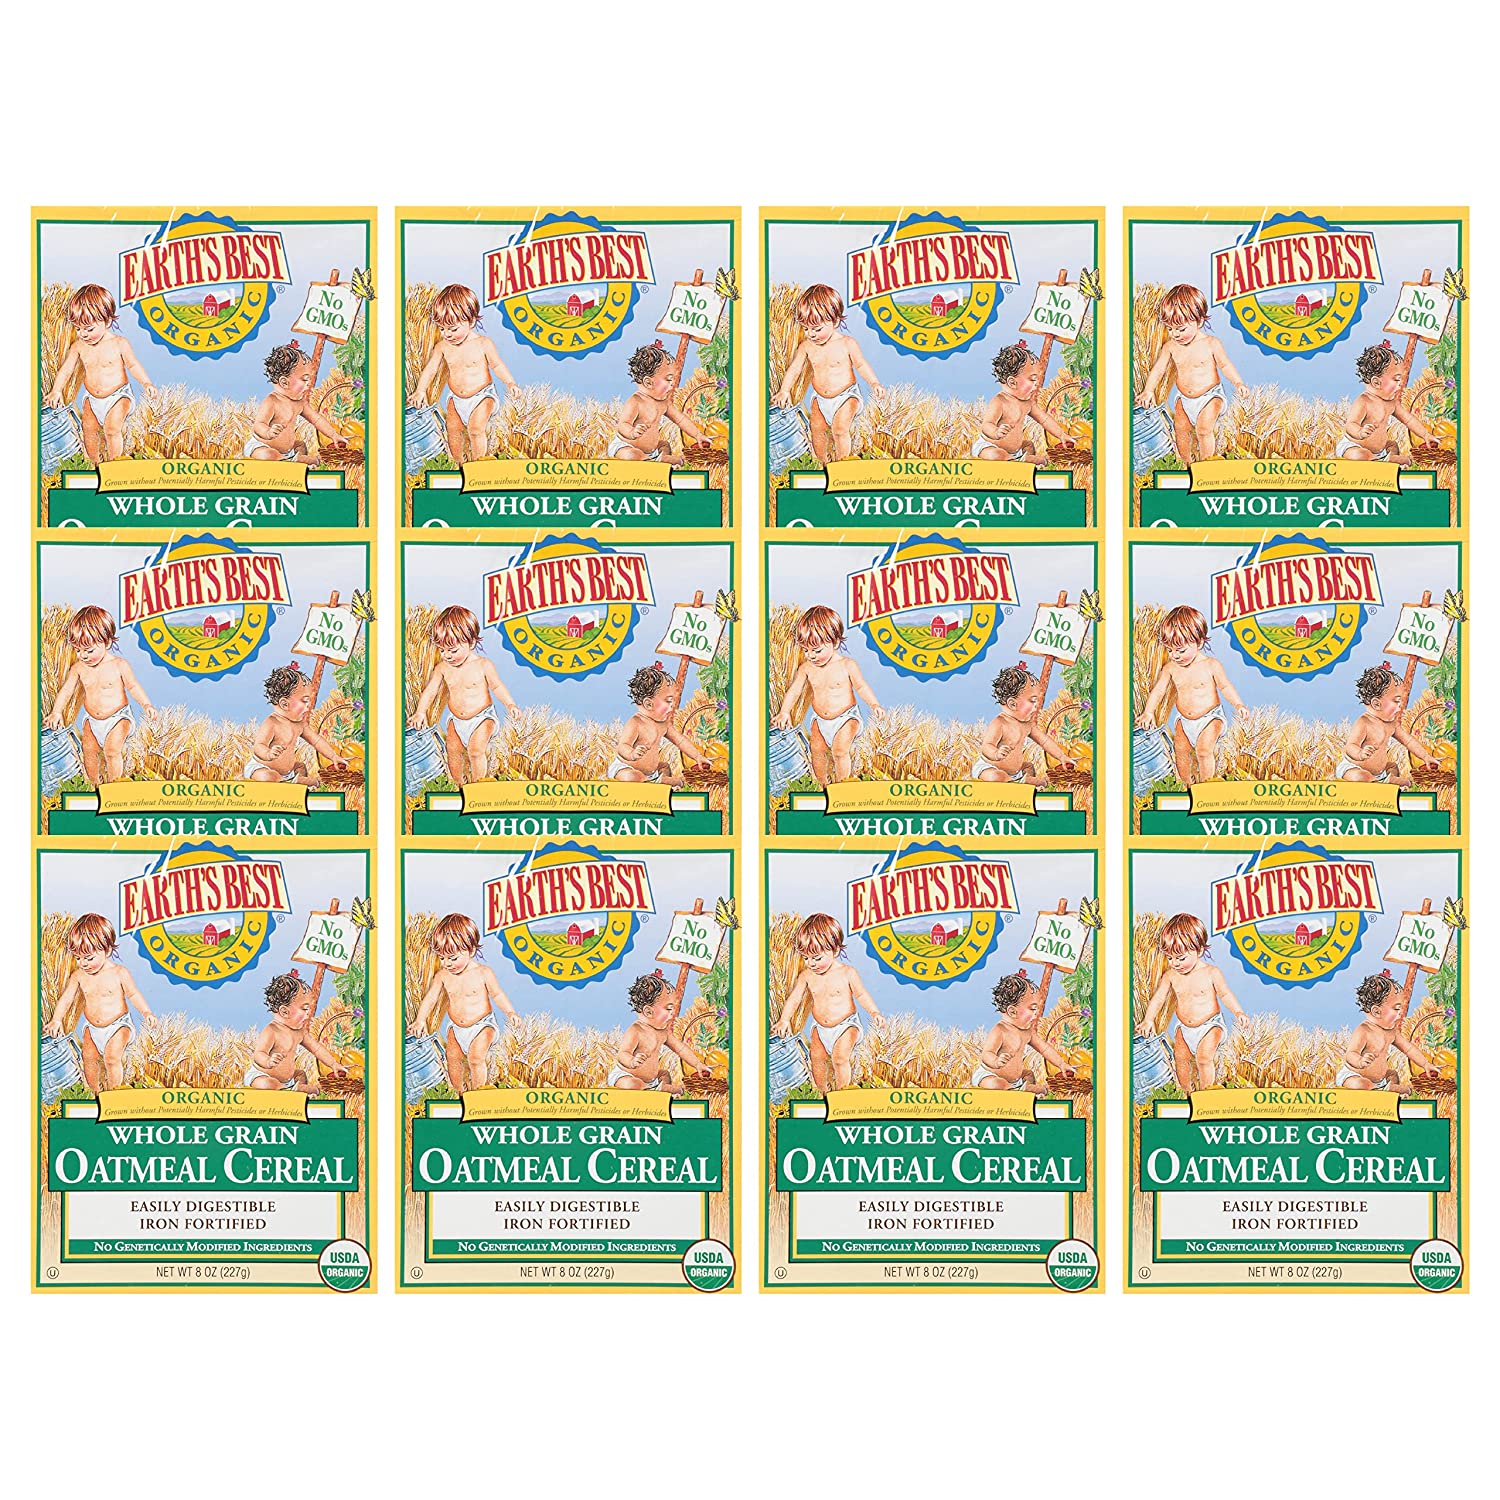 「お得な12箱セット」Earth 039 s Best 社Organic Baby Food, Organic Whole Grain Oatmeal Baby Cereal, Non-GMO, Easily Digestible and Iron Fortified Baby Food, 8 oz Box (Pack of 12) 227g入りが12箱